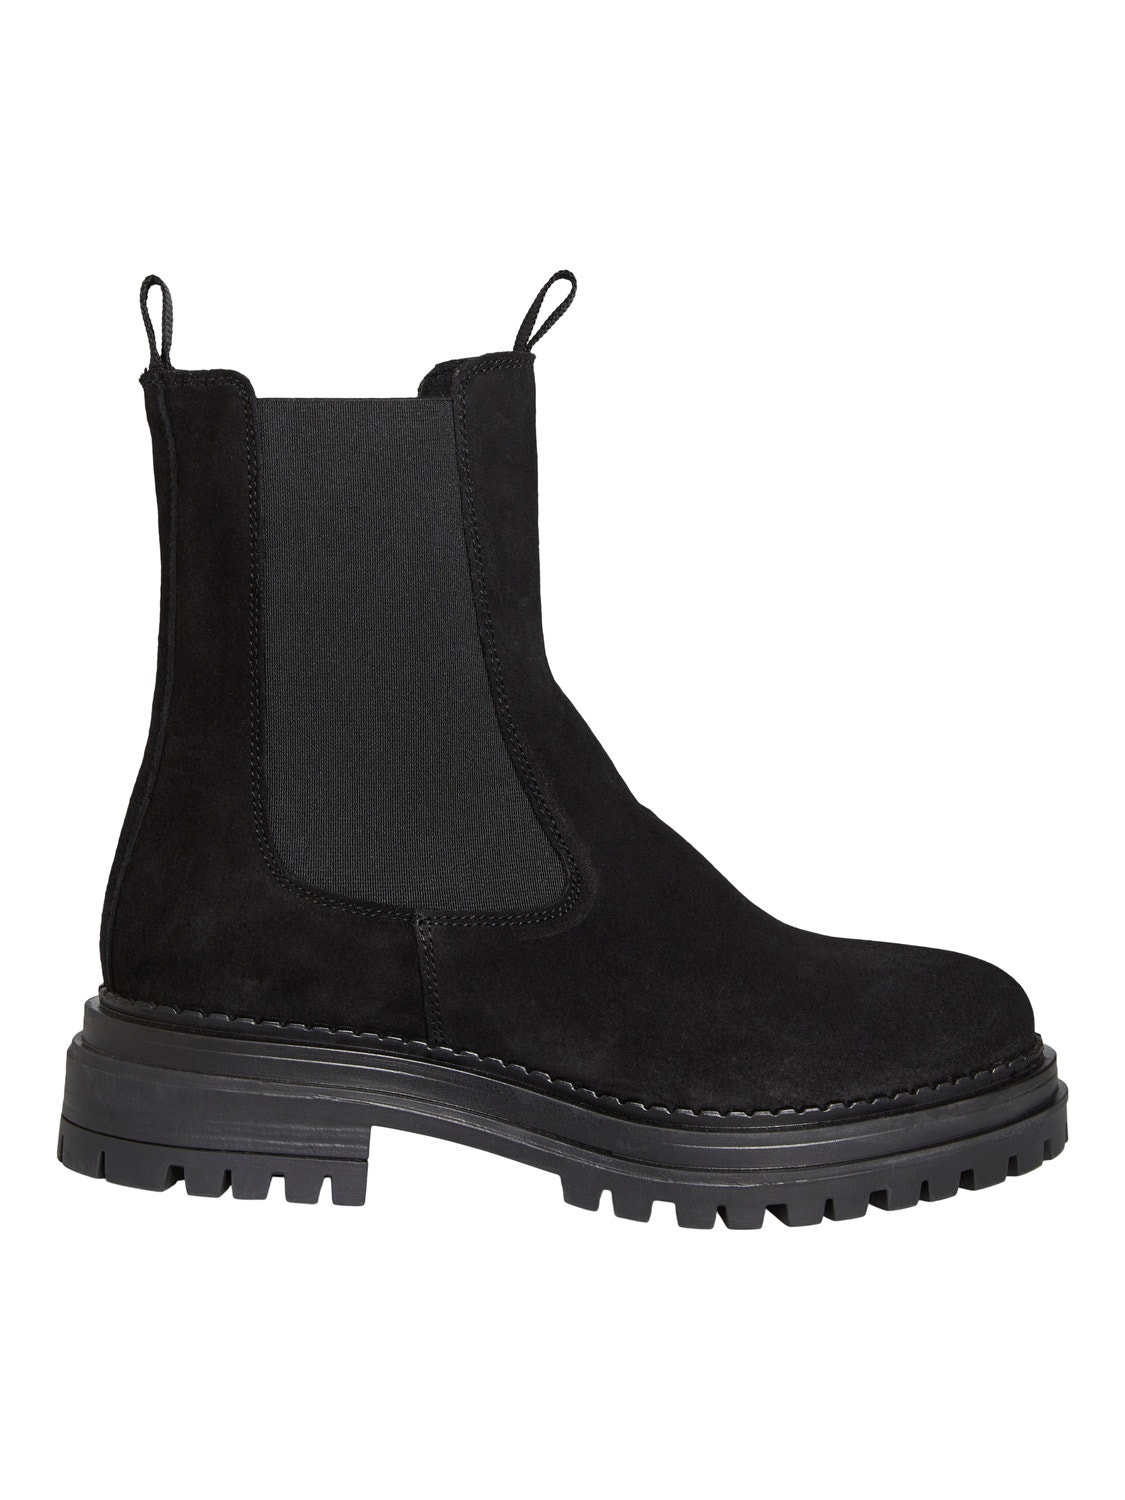 Vero Moda Boots -Black - 10298639